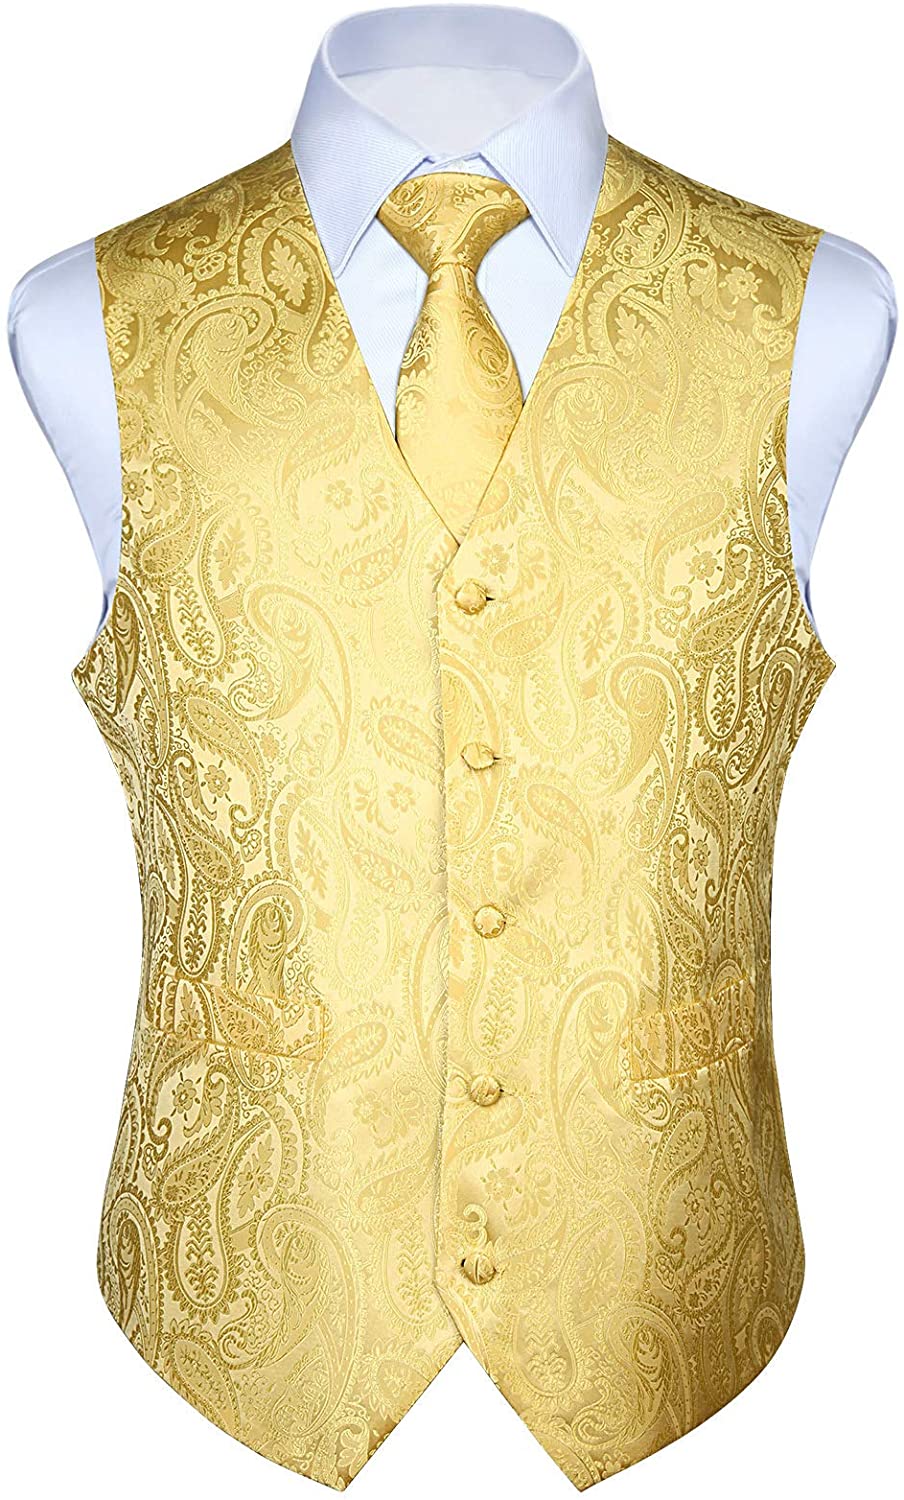 HISDERN 3pc Men's Paisley Floral Jacquard Vest Suit & Necktie and Pocket Square Set Waistcoat for Tuxedo Wedding Party